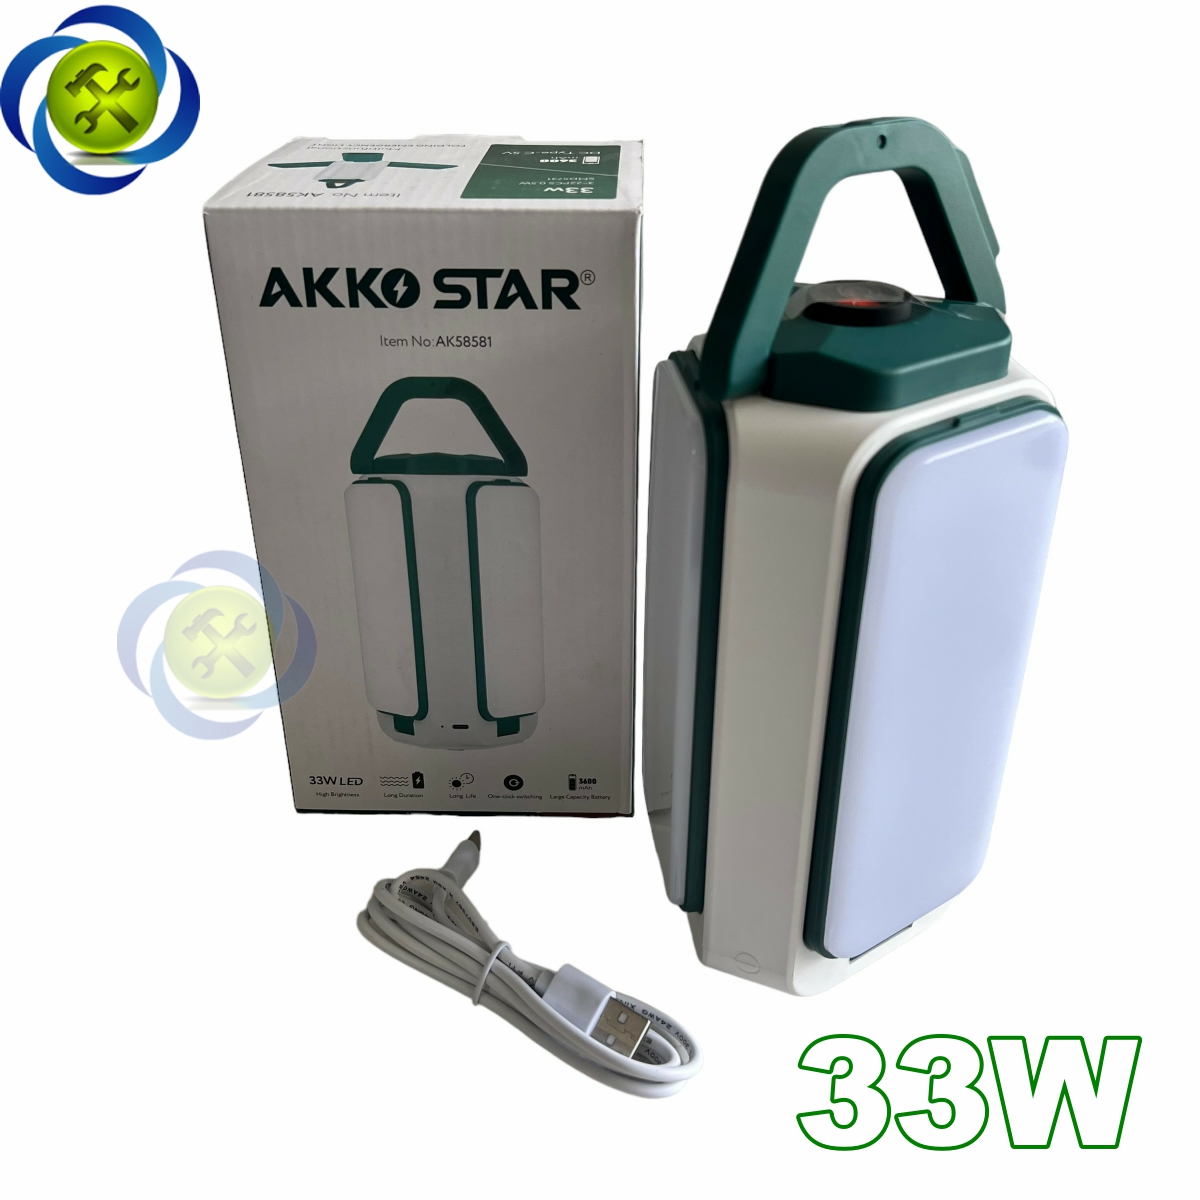 Đèn LED cầm tay đa năng AKKO STAR AK58581 công suất 33W sạc pin